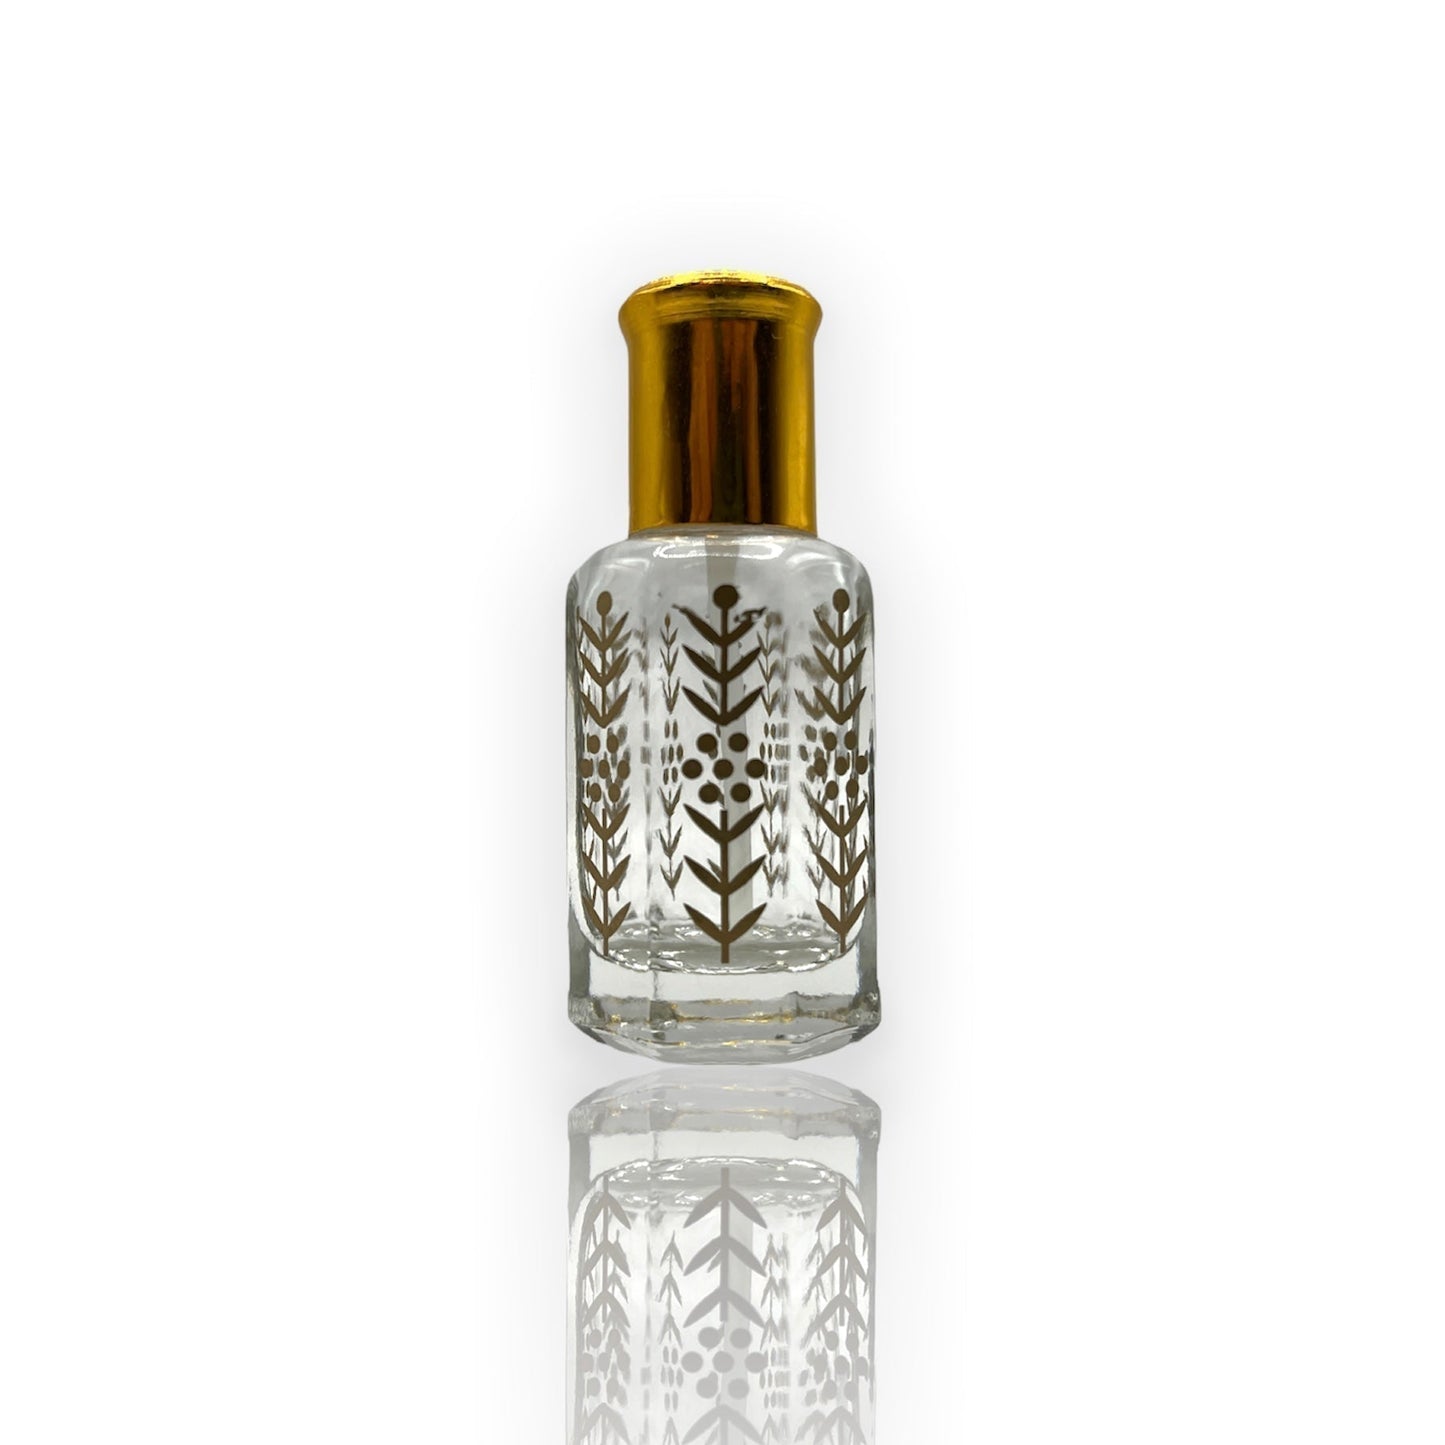 M-19 Öl Parfüm *Inspiriert Von Kenzo Pour Homme